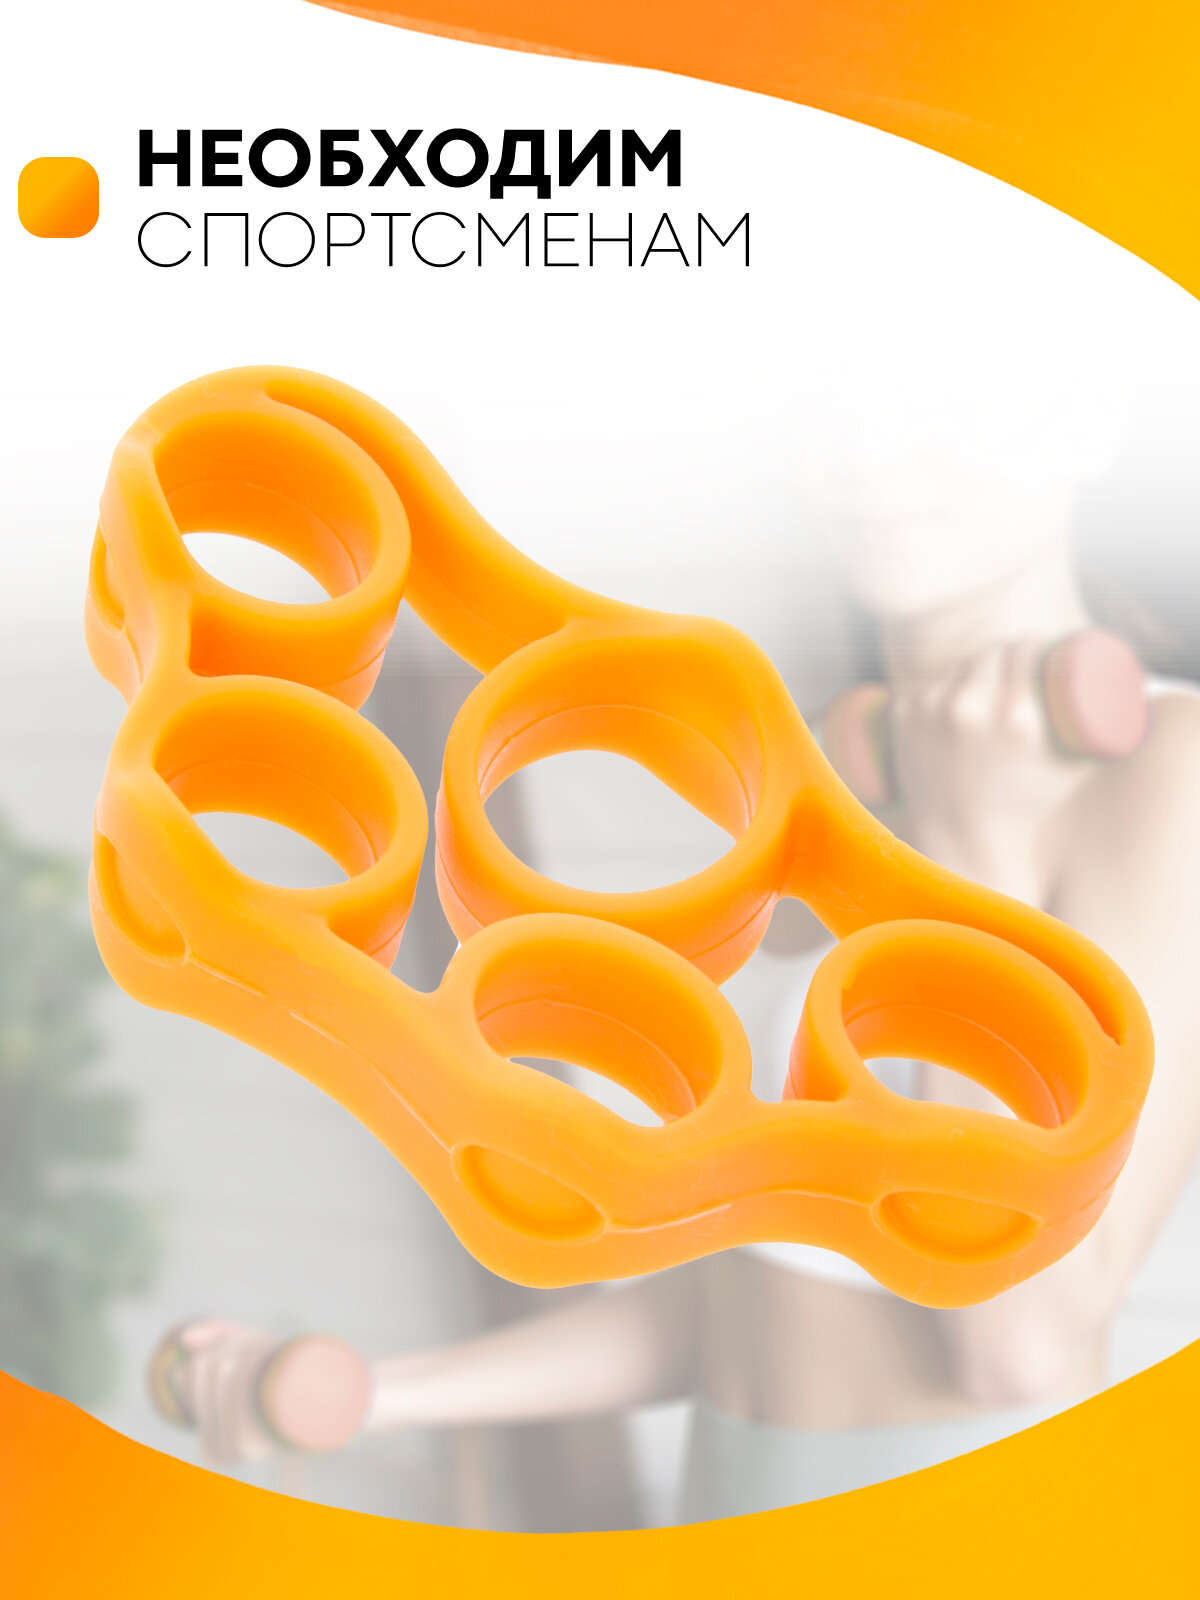 Кистевой эспандер для пальцев рук (подходит для тонких и средних размеров пальцев рук) изготовлен из мягкого силикона, цвет оранжевый, нагрузка 5 кг